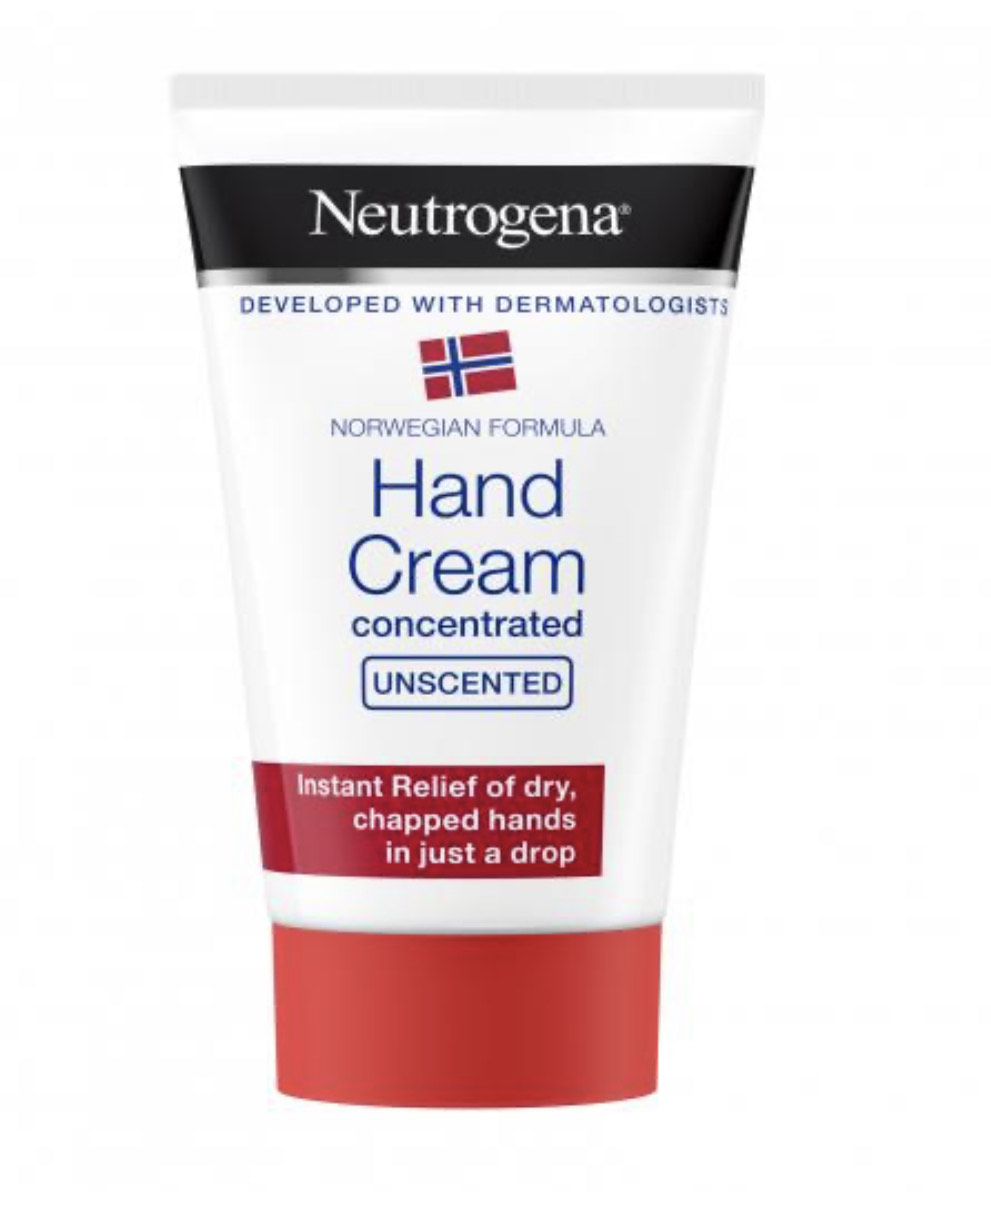 Neutrogena Unscented Hand Cream 50 ml